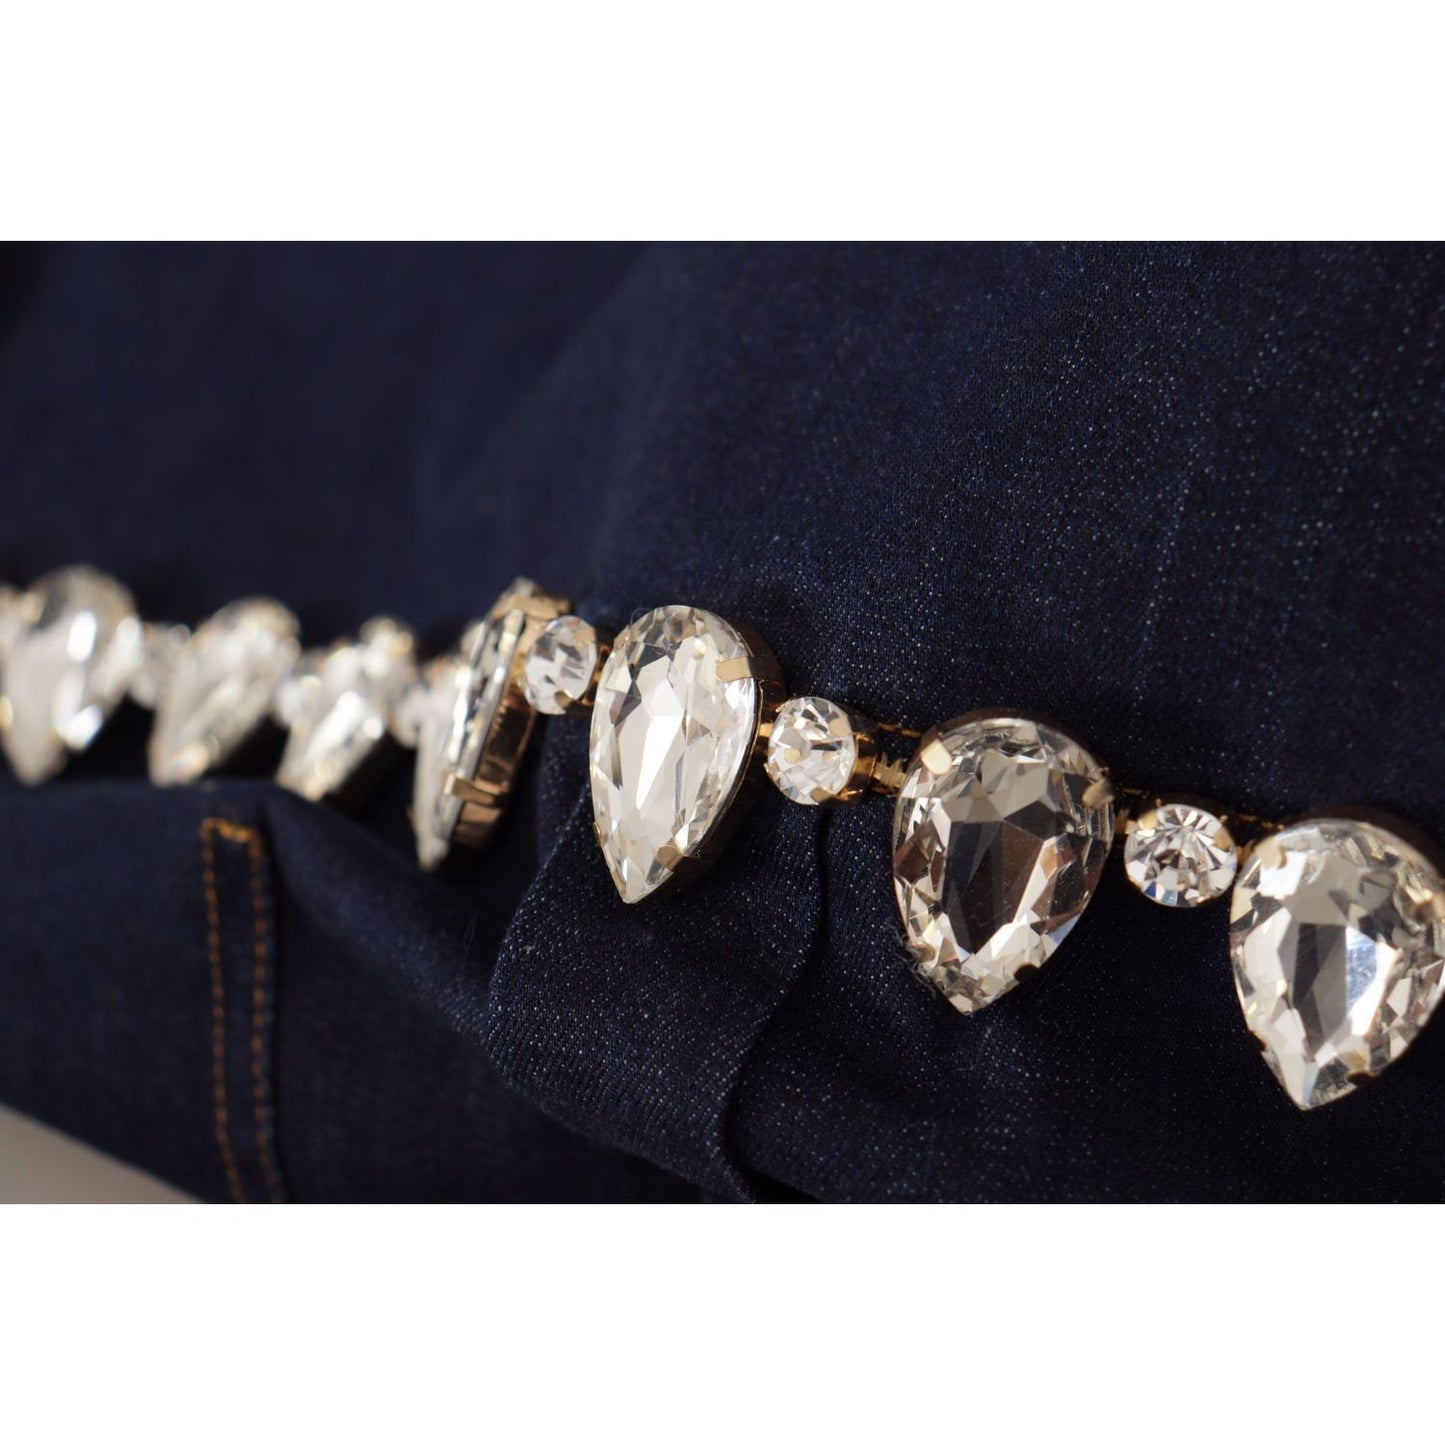 Dolce & Gabbana Elegant Crystal-Embellished Denim Jacket blue-denim-crystal-embellish-cotton-jacket